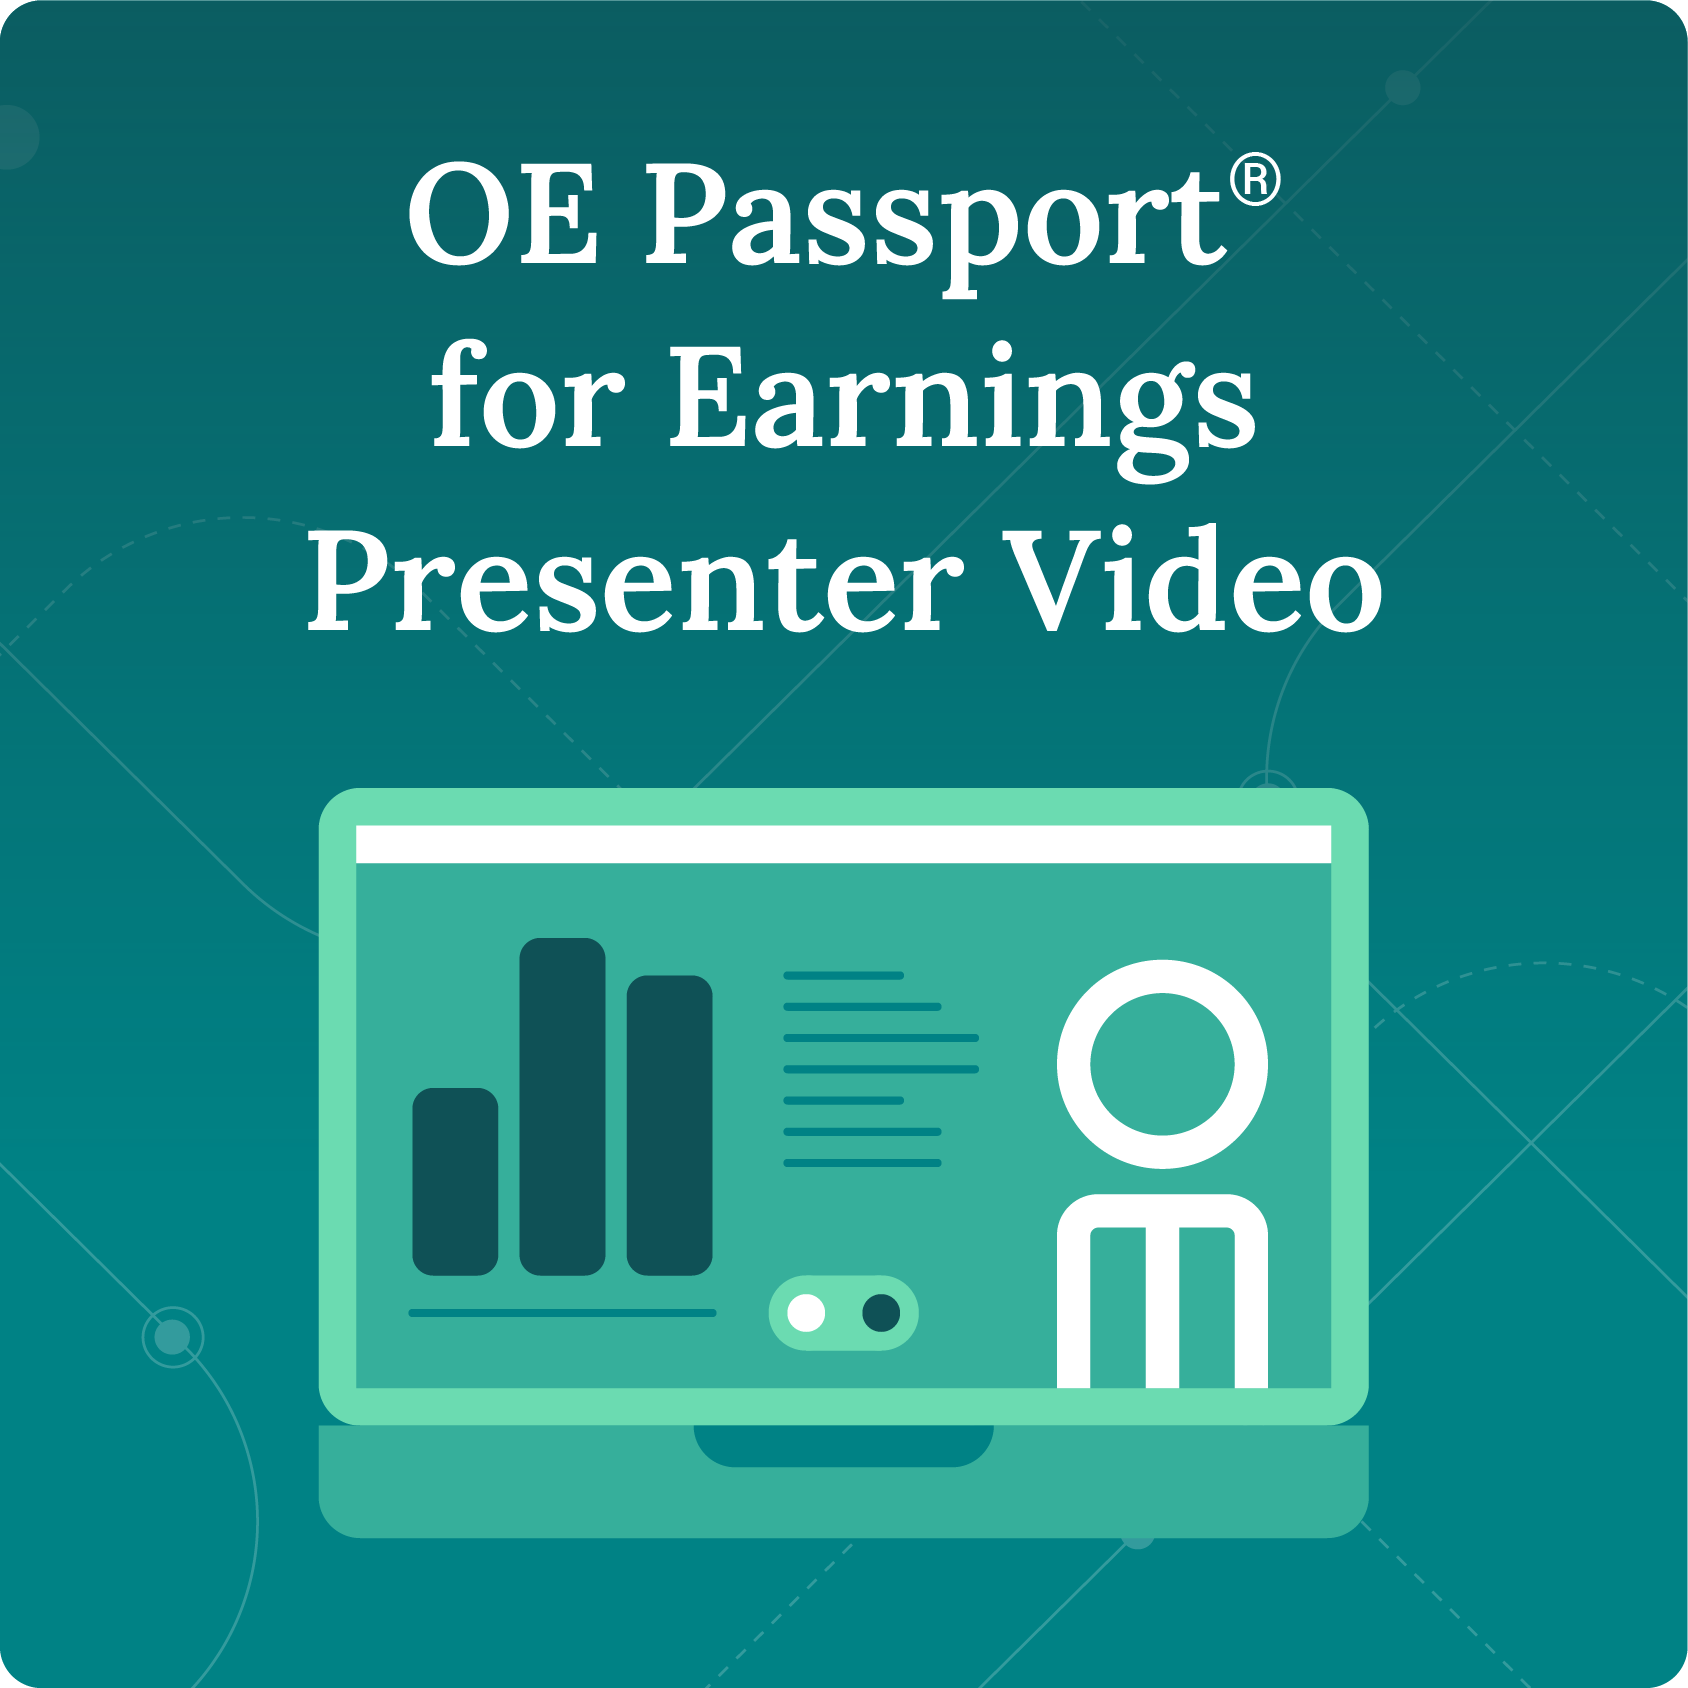 OE Passport for Earnings Presenter Video